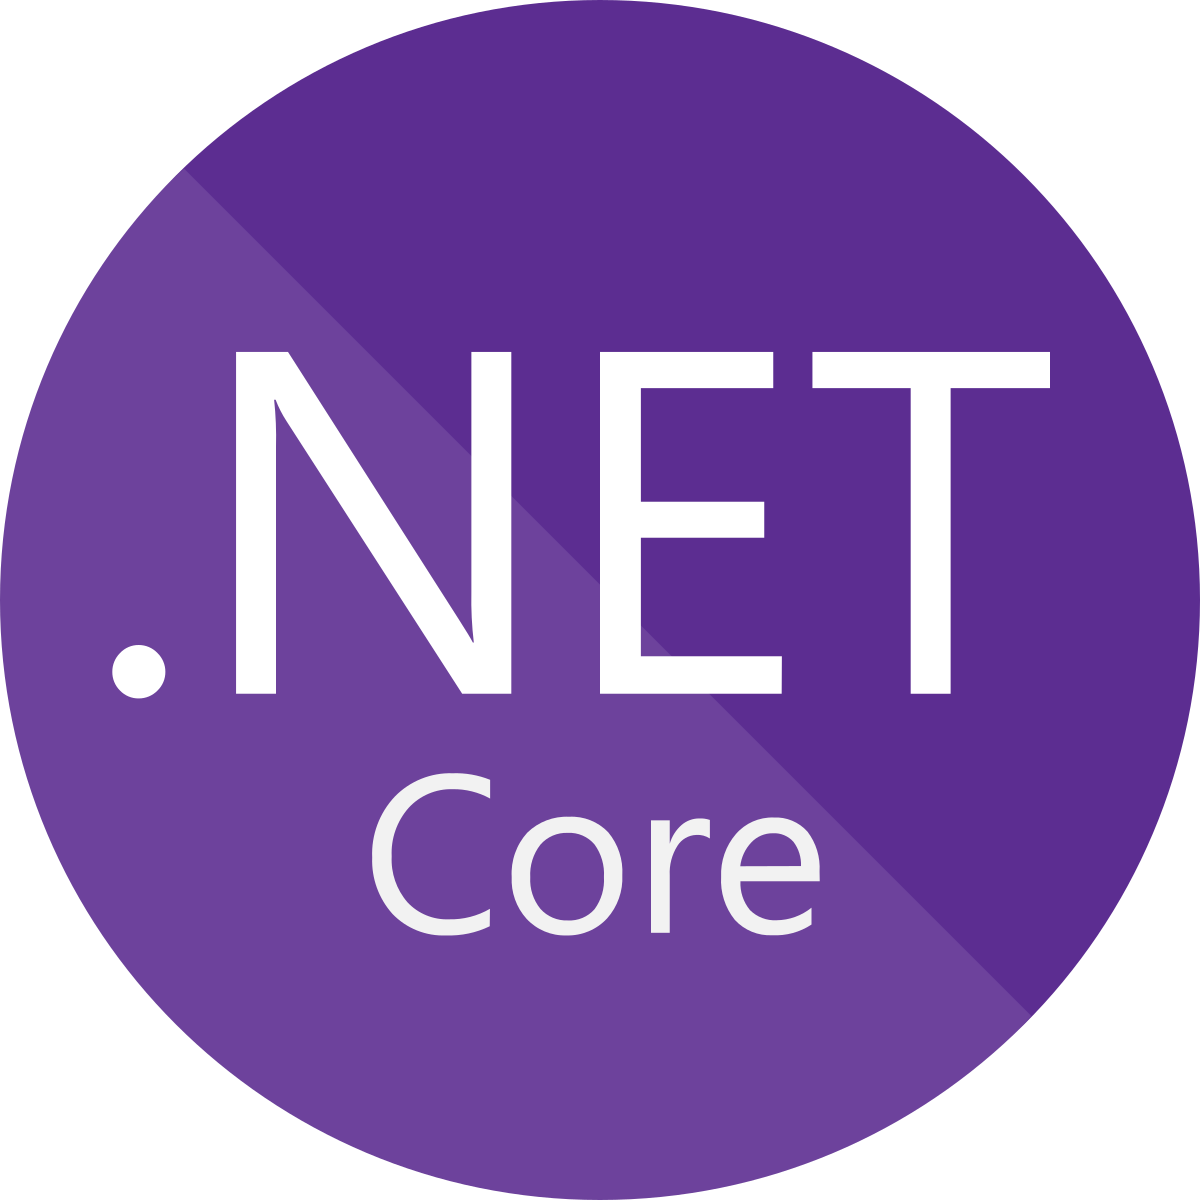 asp.net core development services